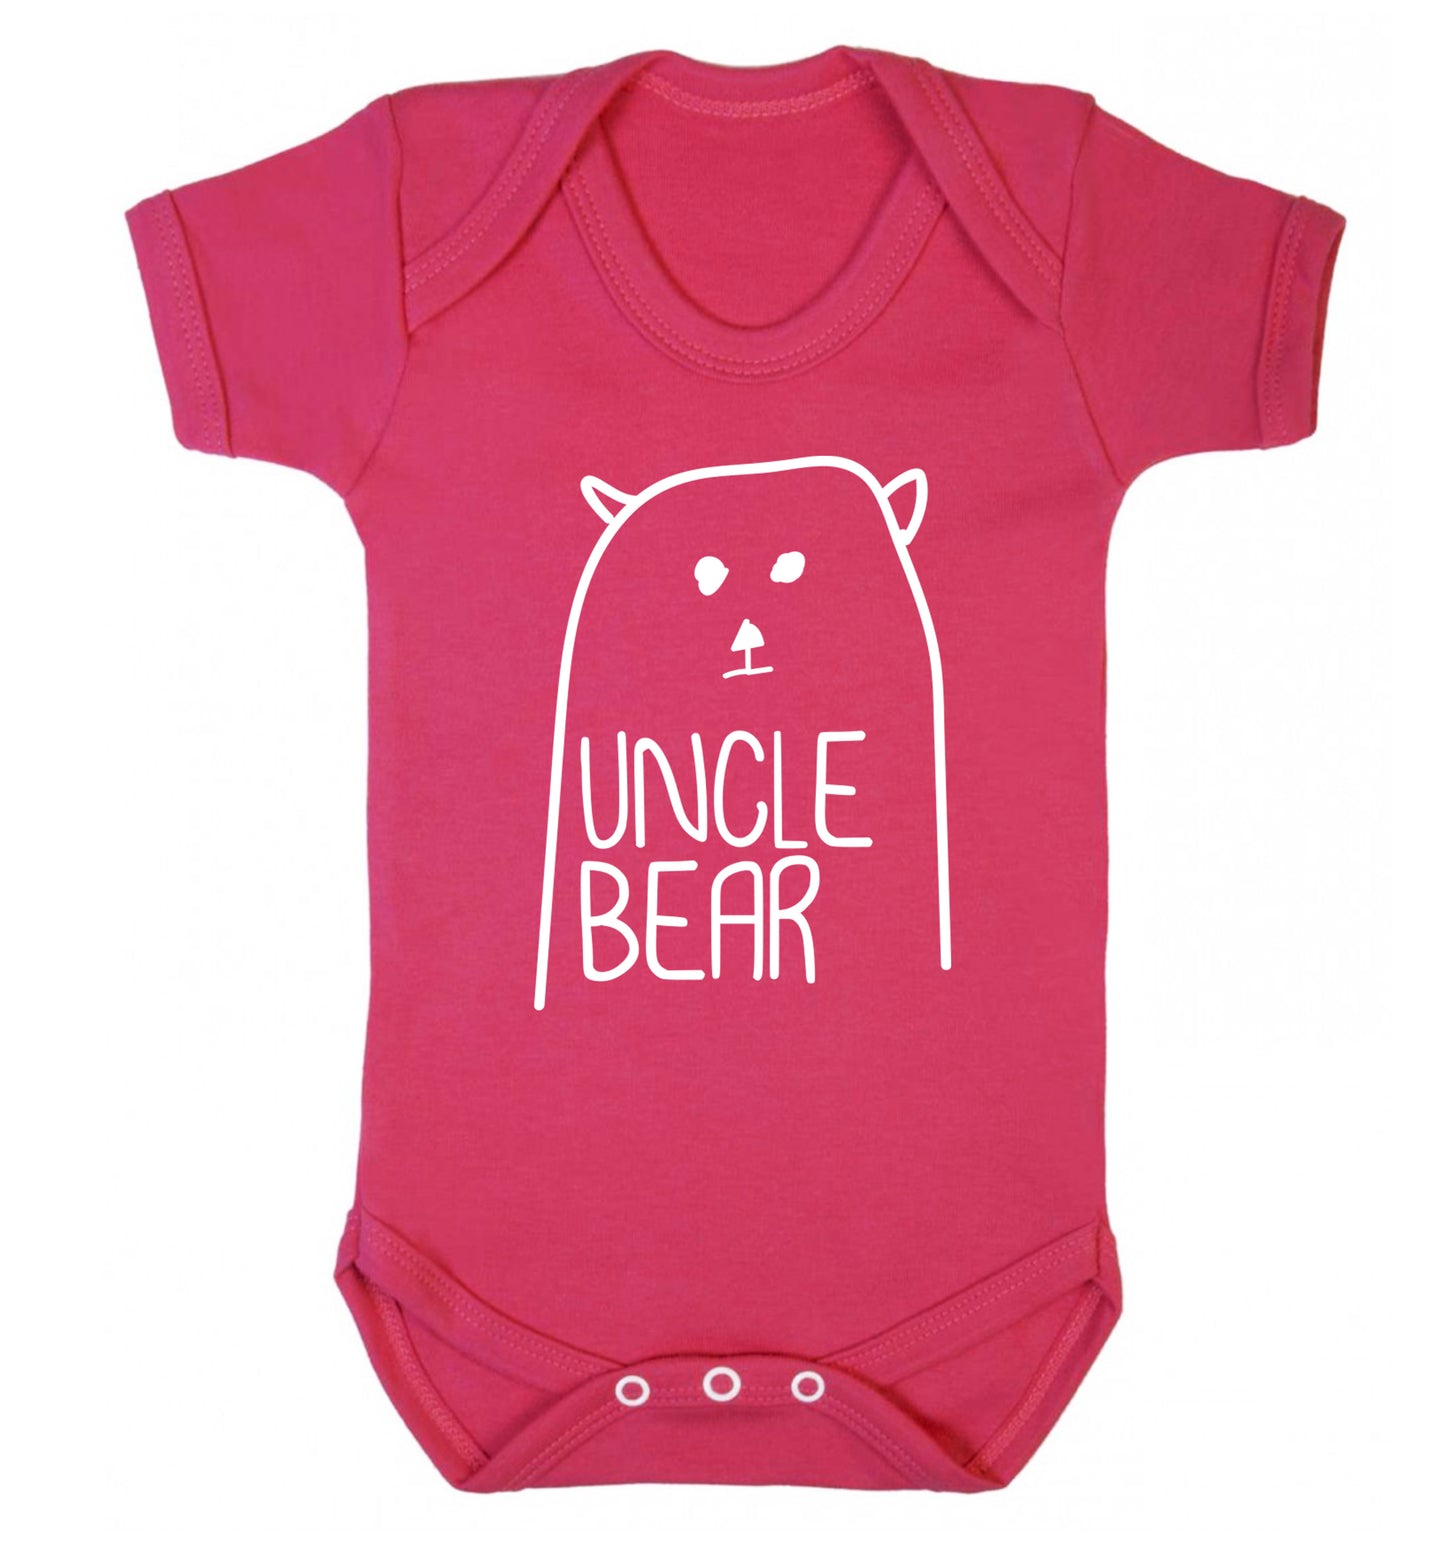 Uncle bear Baby Vest dark pink 18-24 months